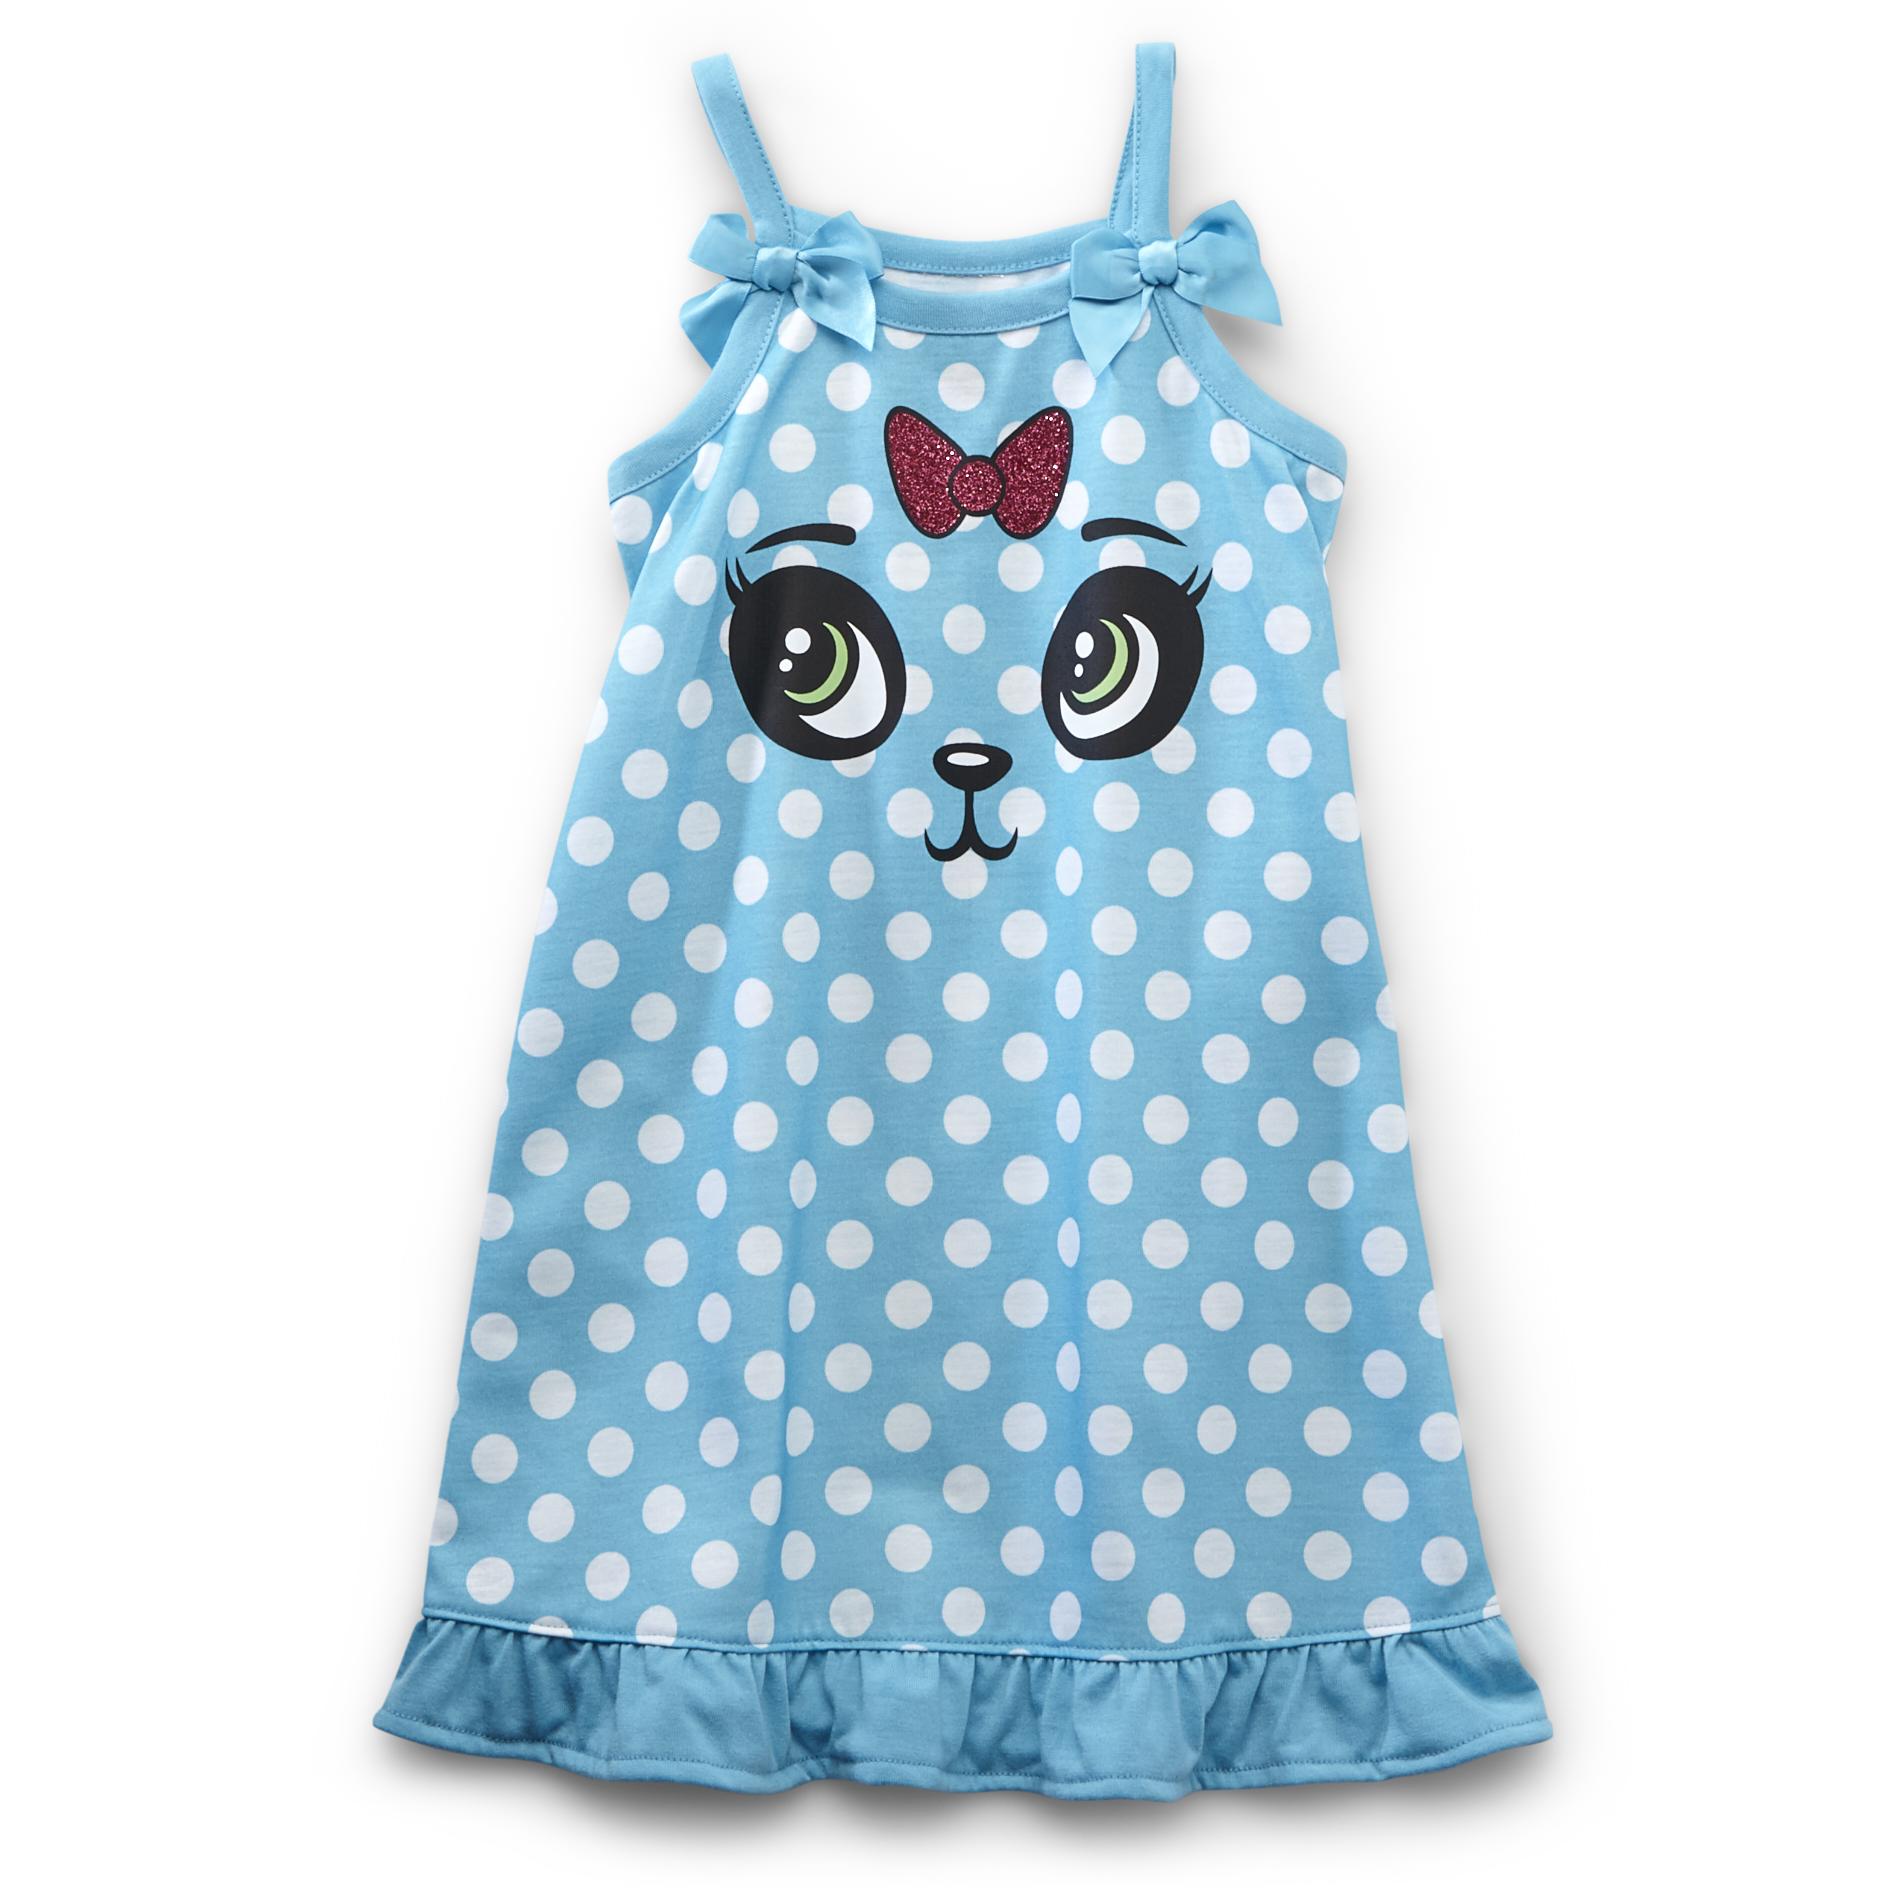 Joe Boxer Toddler Girl's Sleeveless Nightgown - Polka-Dot Panda